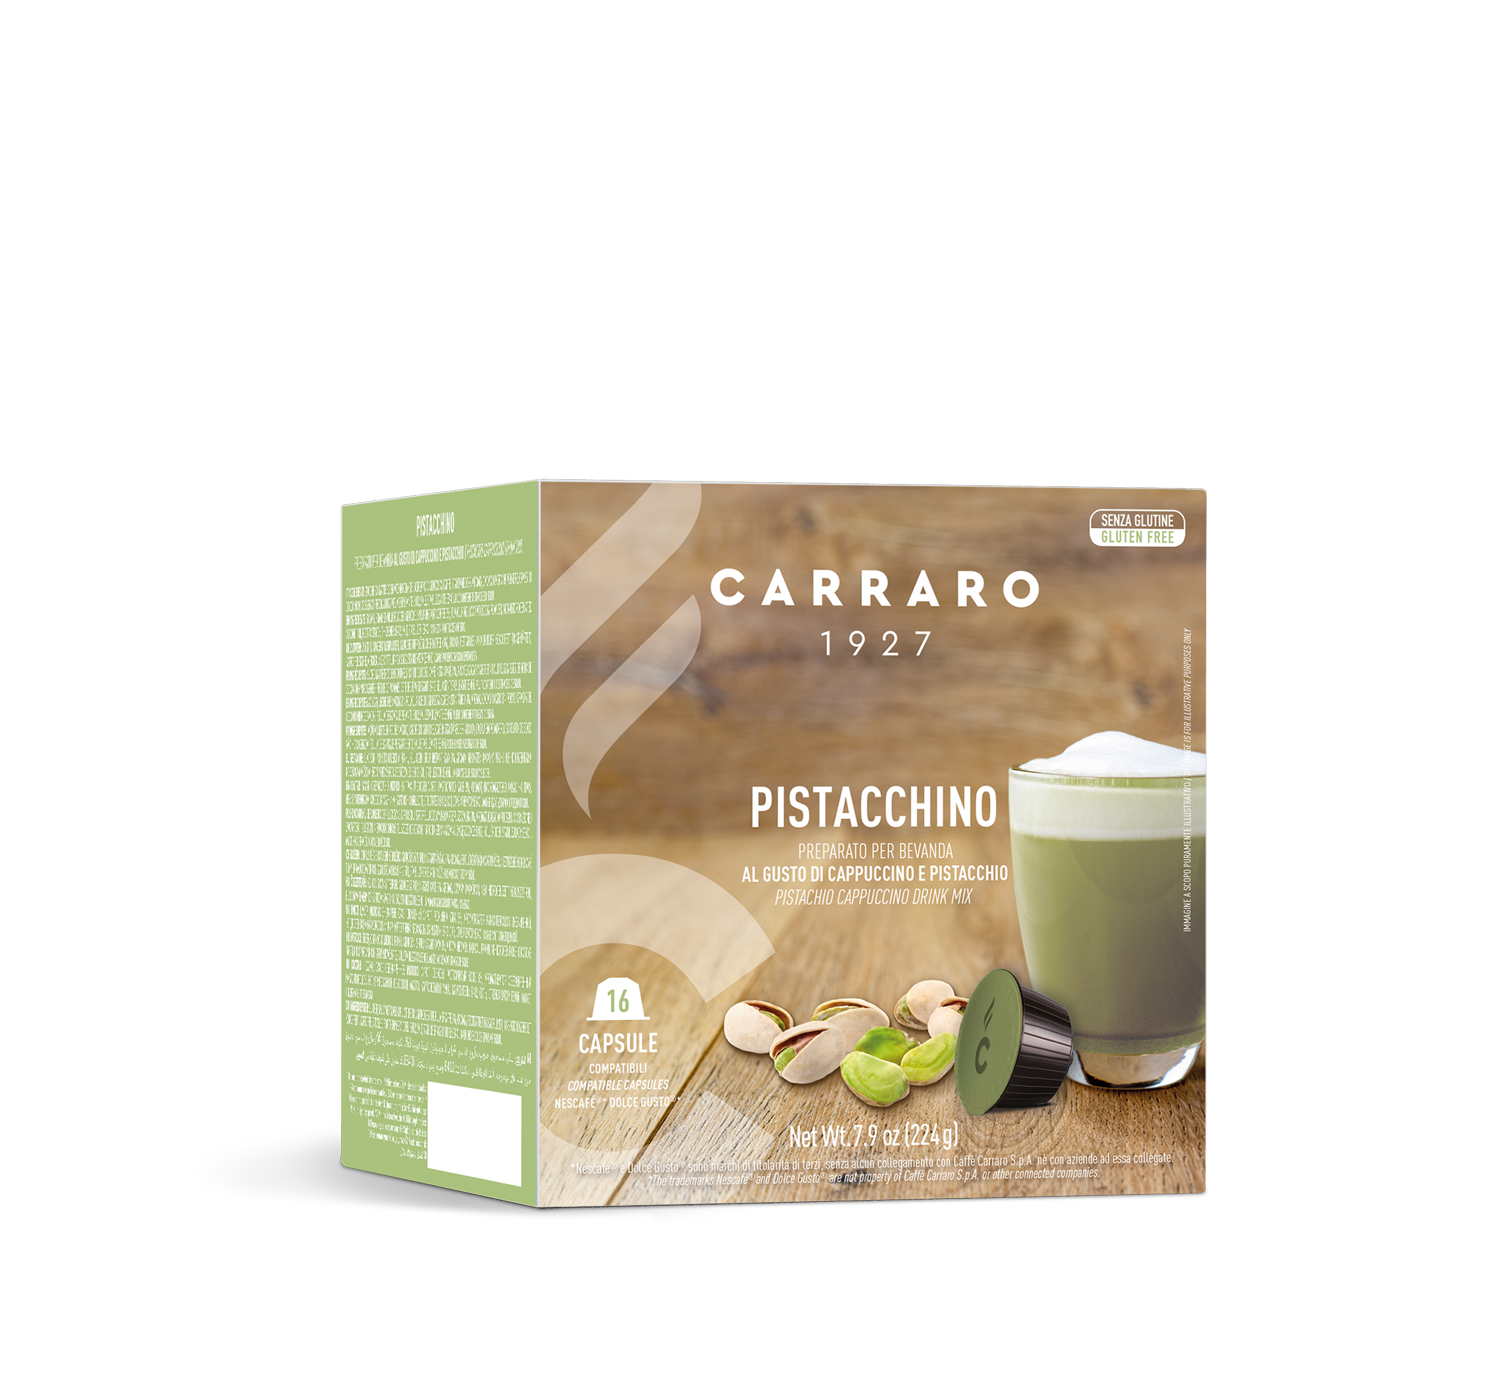 Casa - Pistacchino – 16 capsule compatibili Dolce Gusto®* - Shop online Caffè Carraro